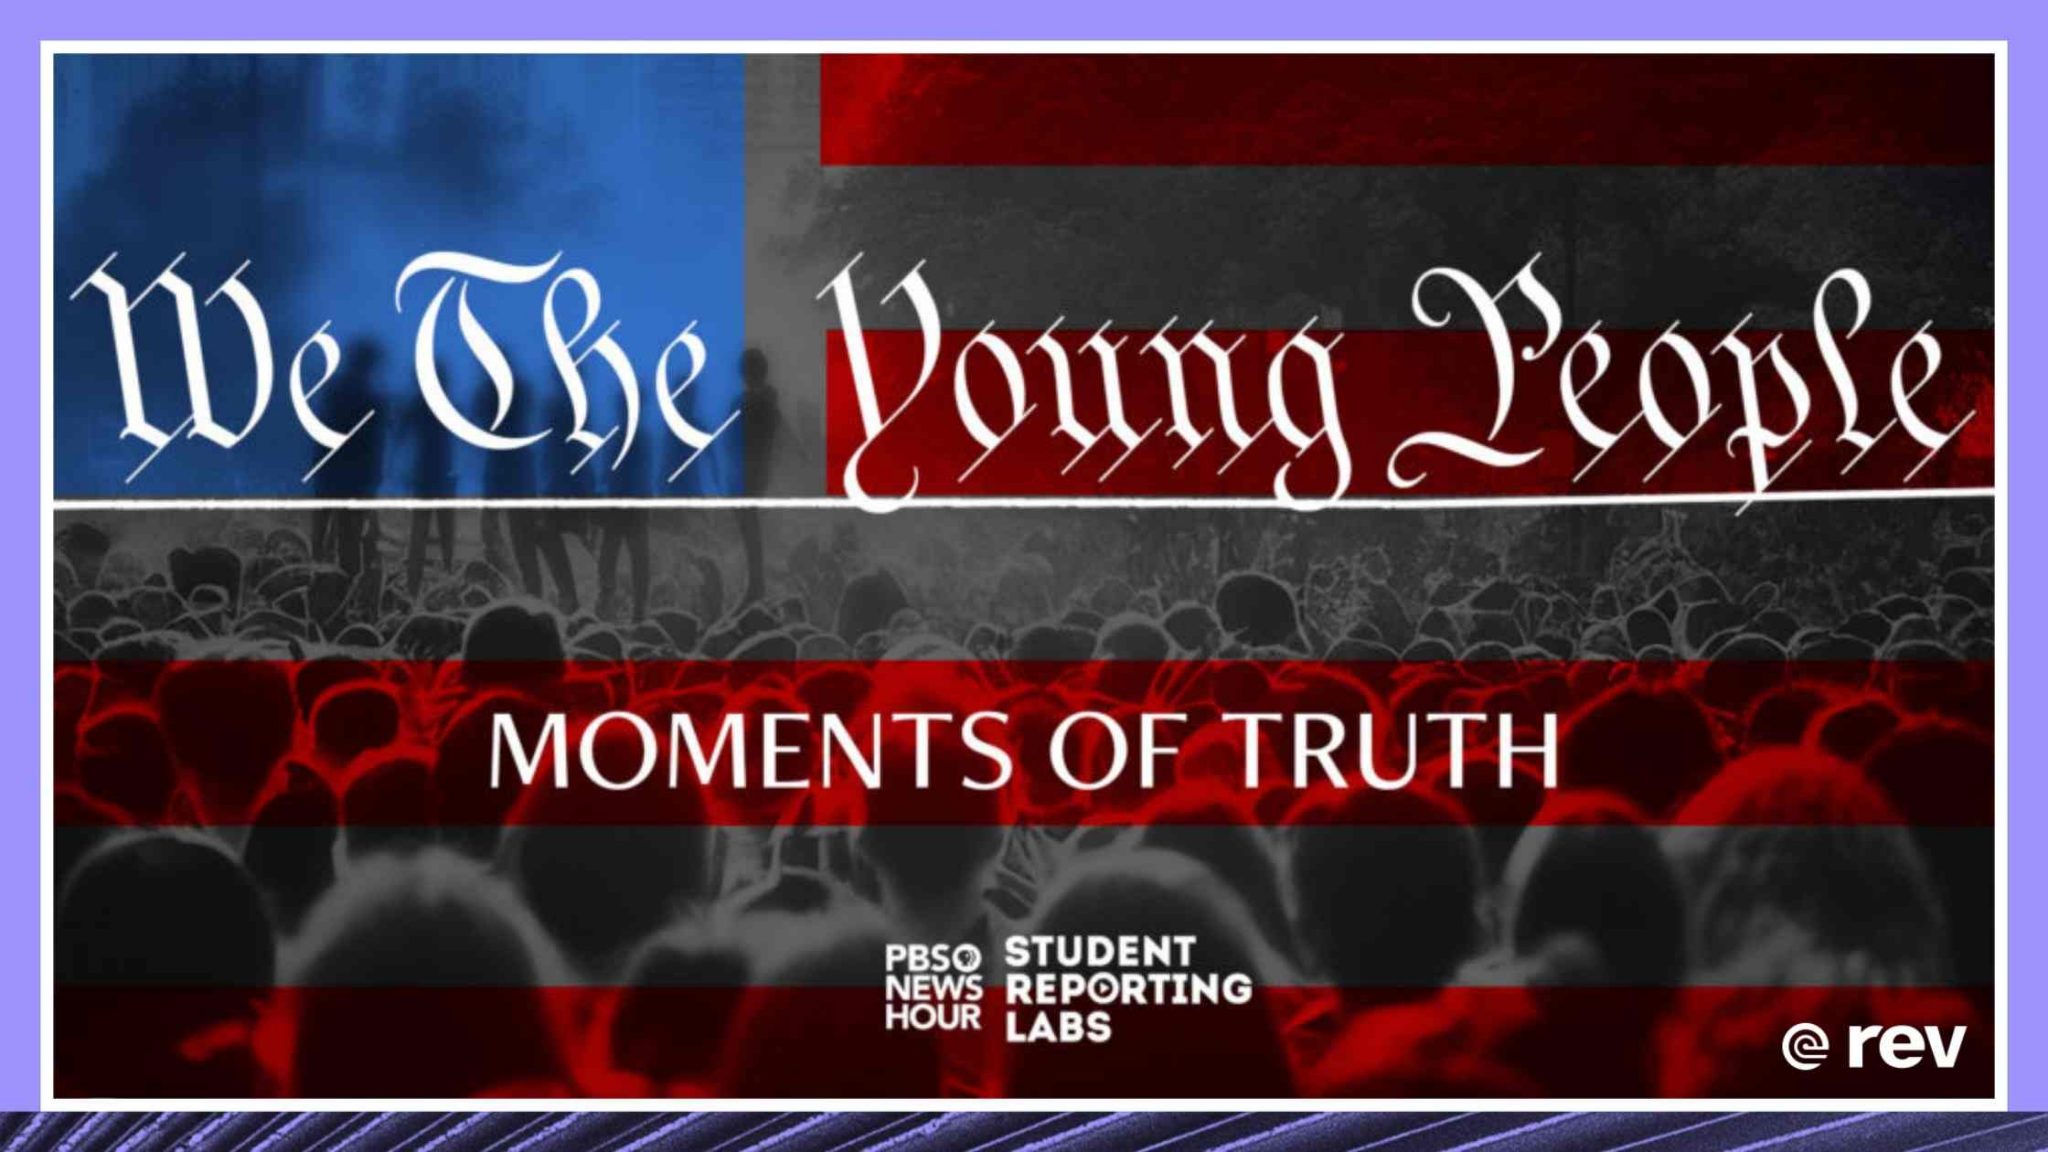 “我们年轻人:真相时刻”- PBS新闻一小时学生报道实验室特别记录